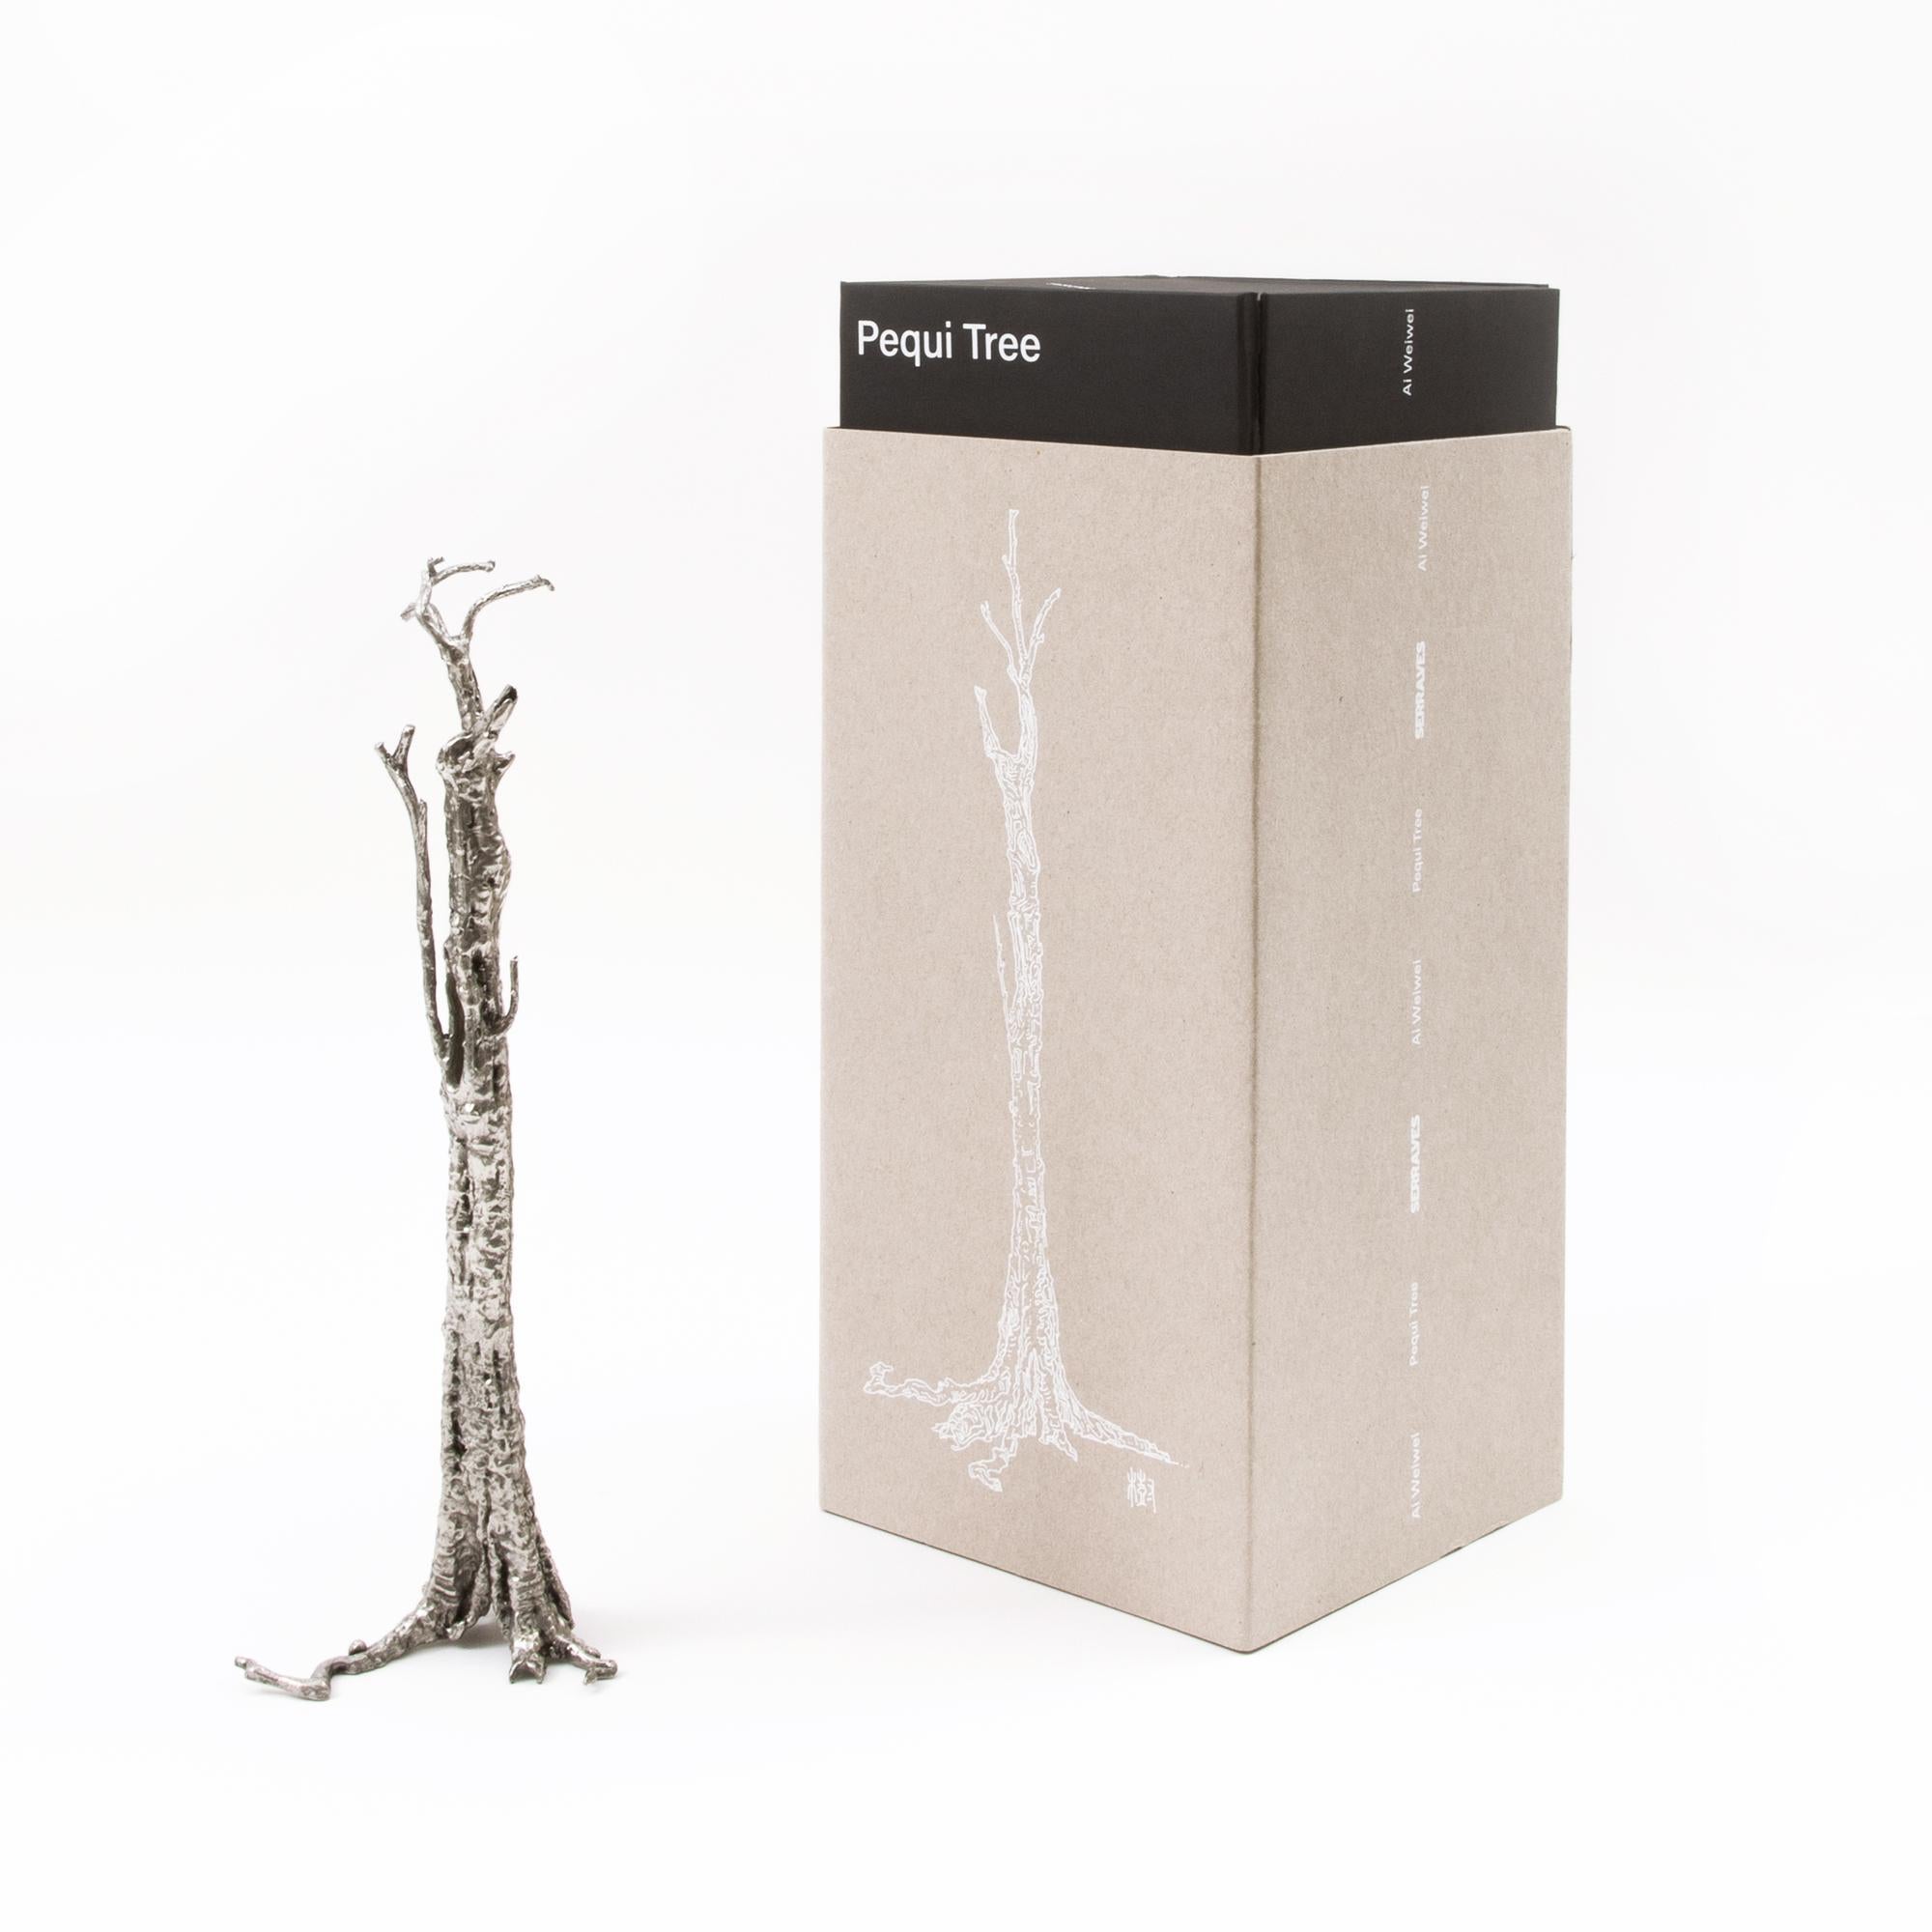 Die Pequi Tree Miniatur basiert auf der 32 Meter langen Skulptur Pequi Tree von Ai Weiwei aus den Jahren 2018-2020 und wurde im Maßstab 1:100 hergestellt. Wie die große gusseiserne Skulptur zeugt die Miniatur vom Verschwinden der harmonischen